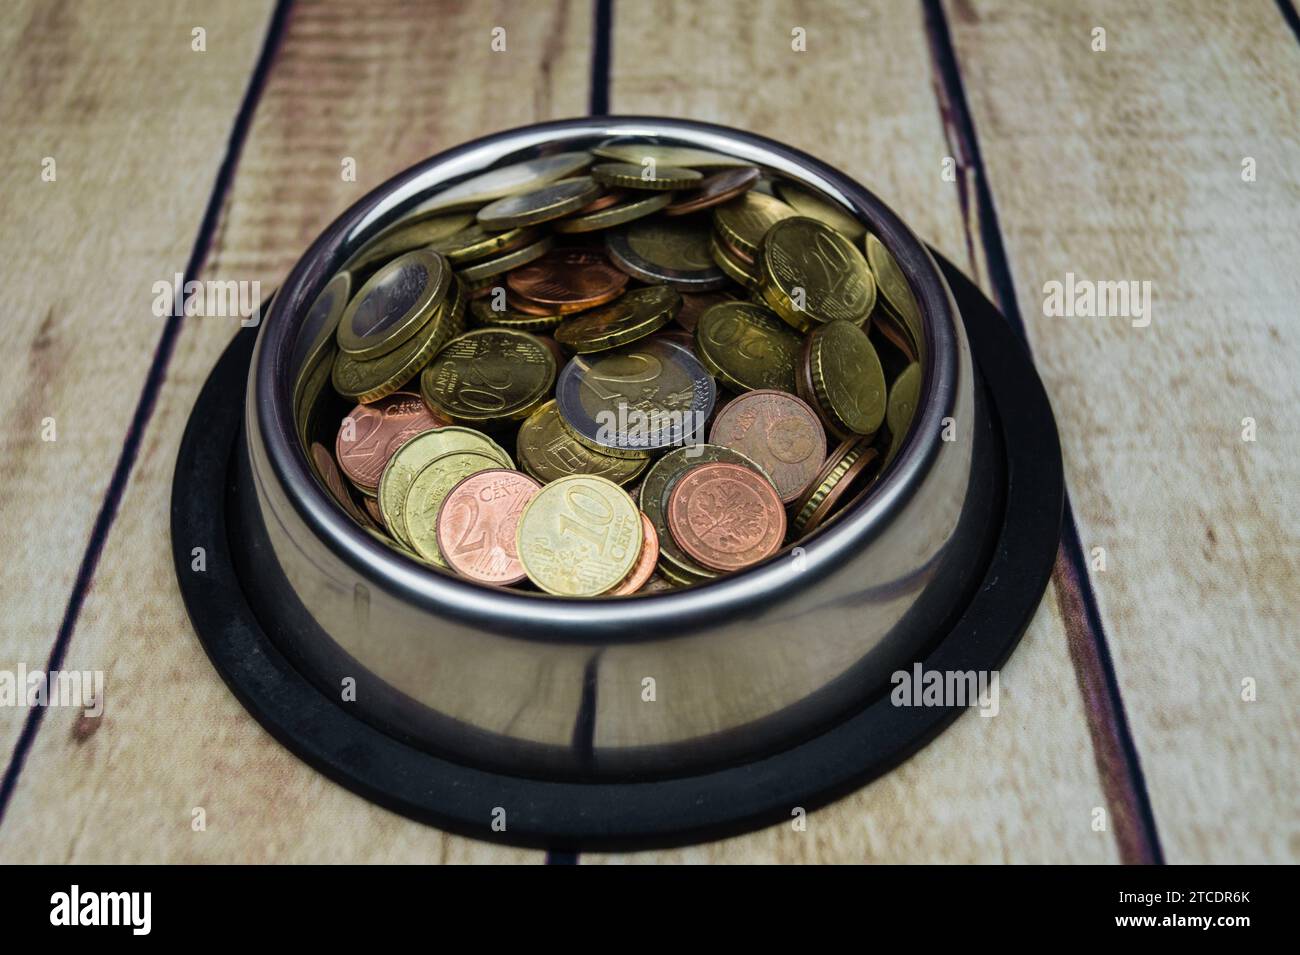 monete nel recipiente, simbolo dei costi di alimentazione Foto Stock